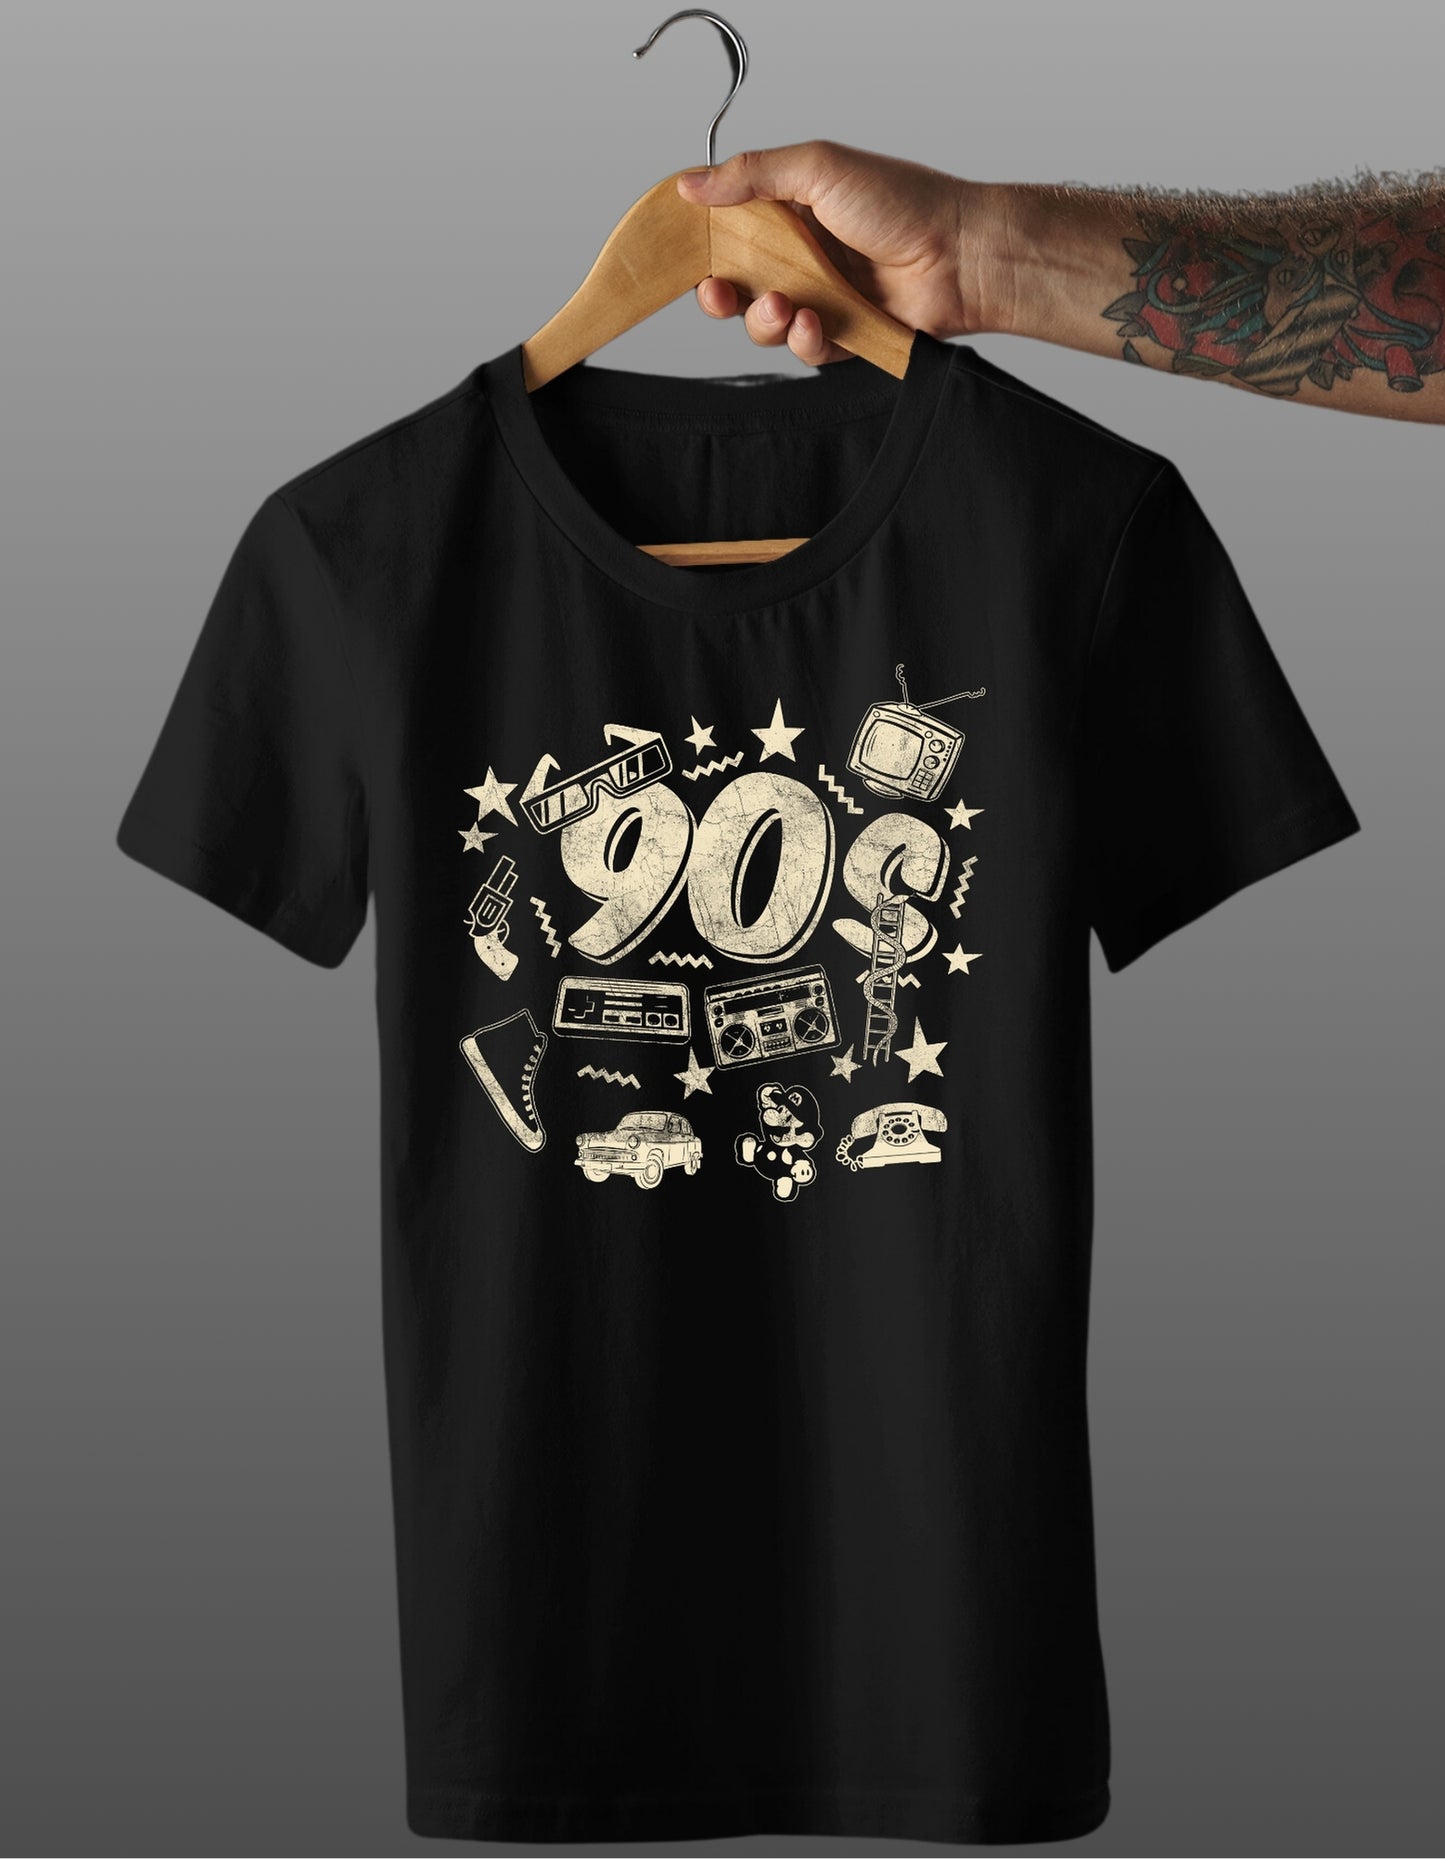 Trenfort Nostalgic 90s Premium Cotton Printed Graphic Tshirt for Men